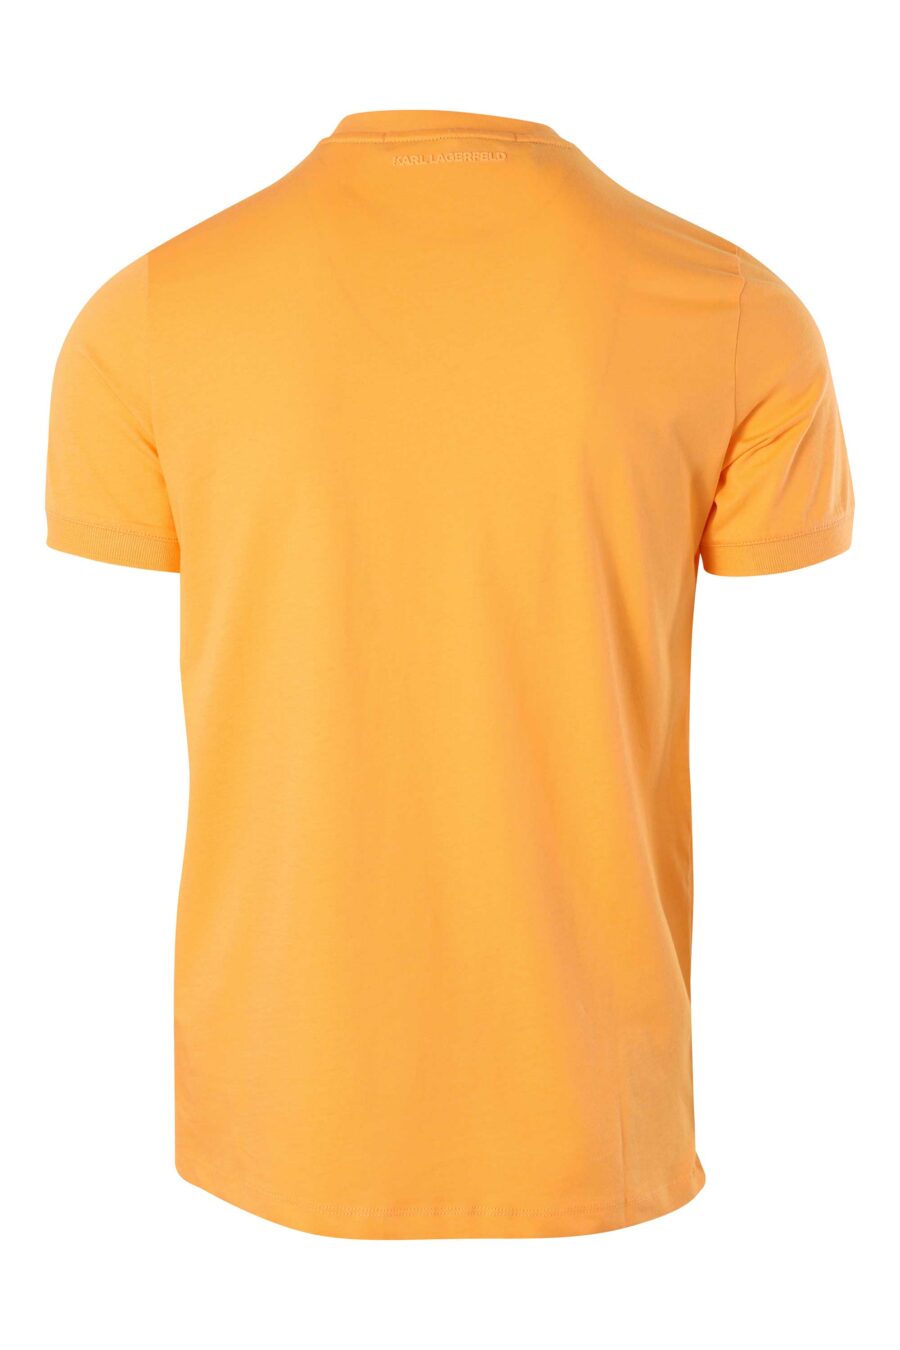 Camiseta naranja con minilogo blanco - 014769666 3